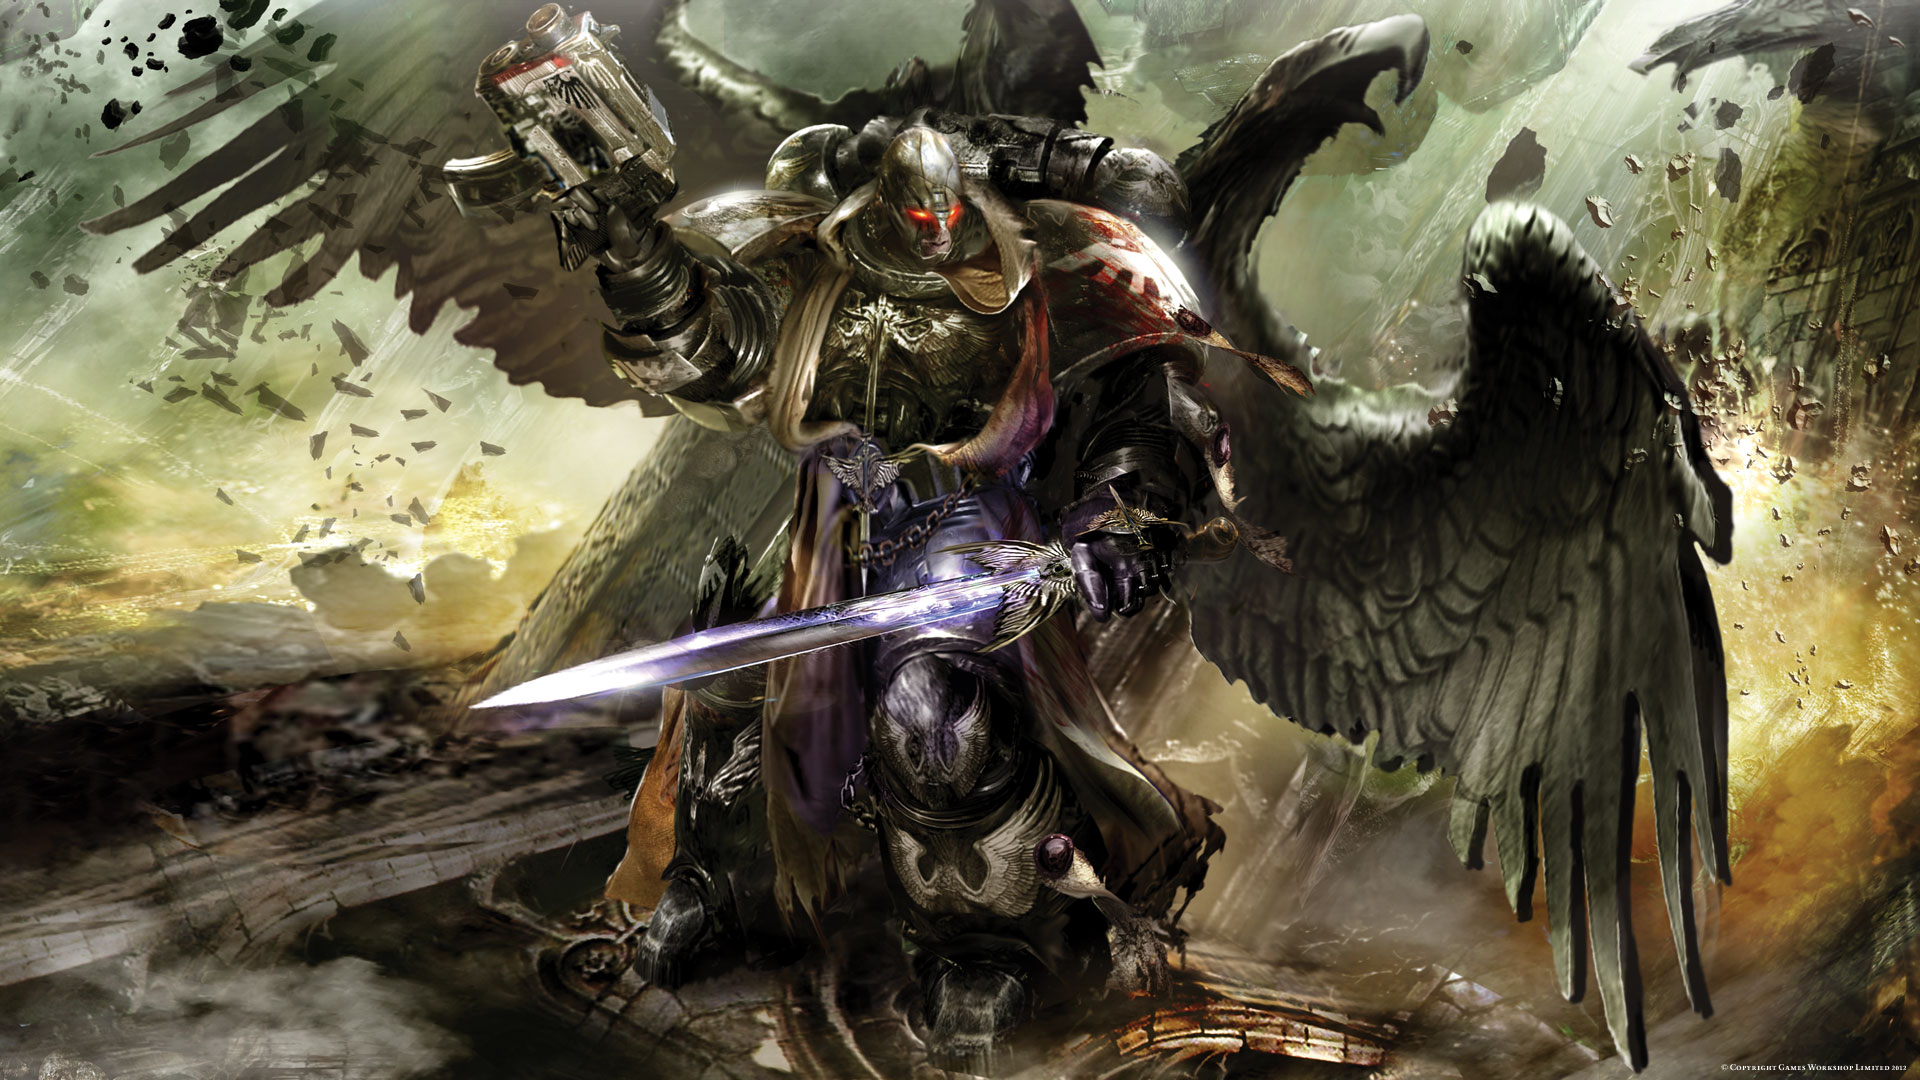 warhammer 40k wallpaper hd,gioco di avventura e azione,demone,cg artwork,personaggio fittizio,mitologia